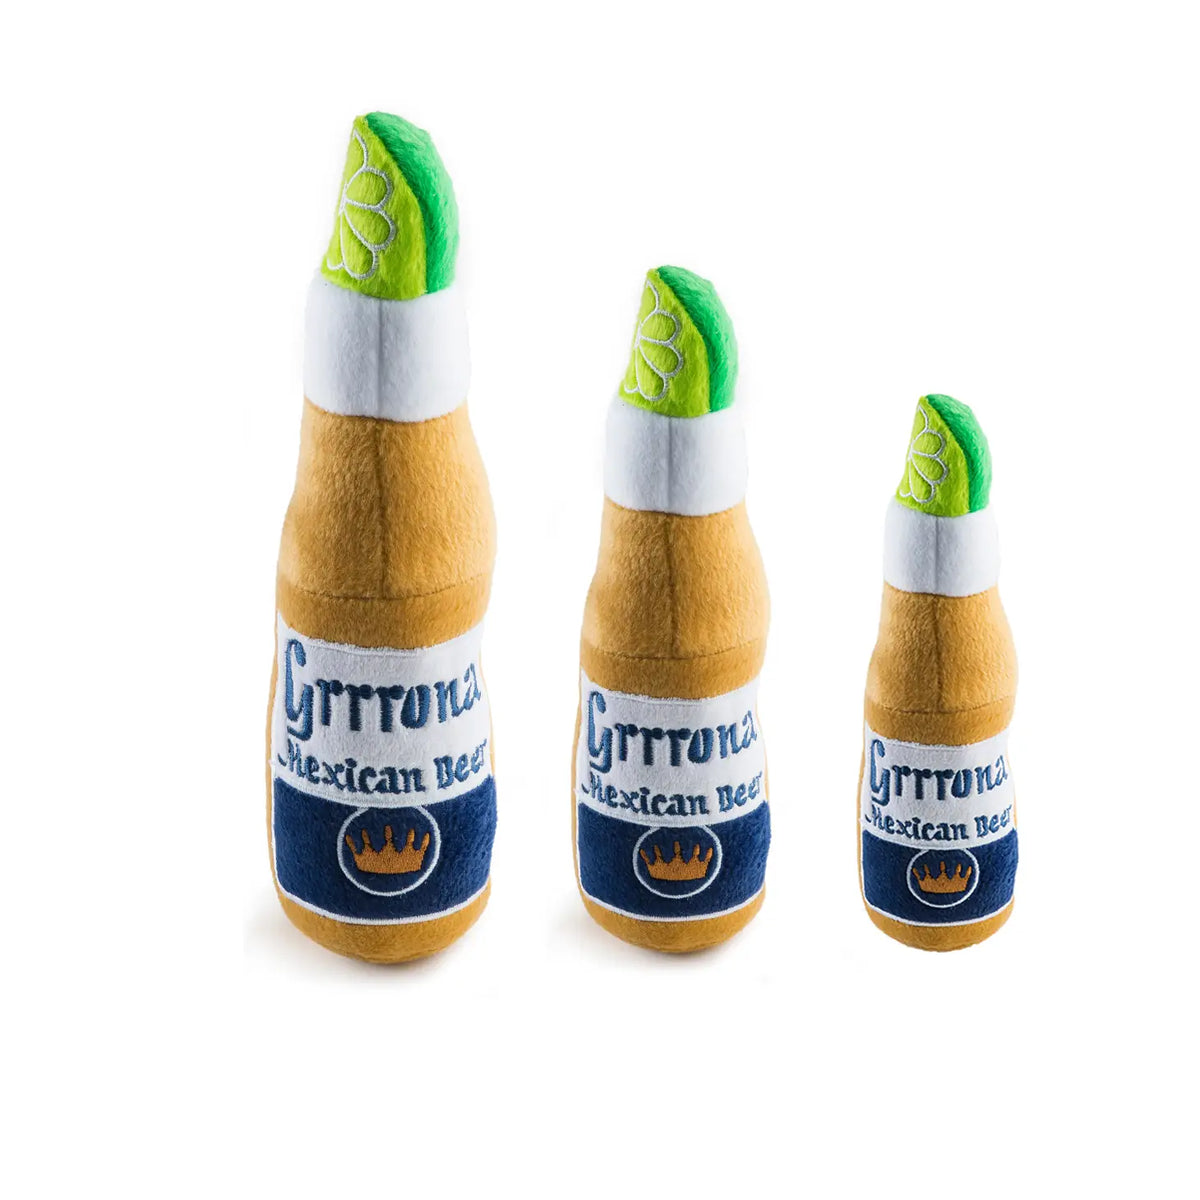 Grrrona Beer Bottle Plush Dog Toy